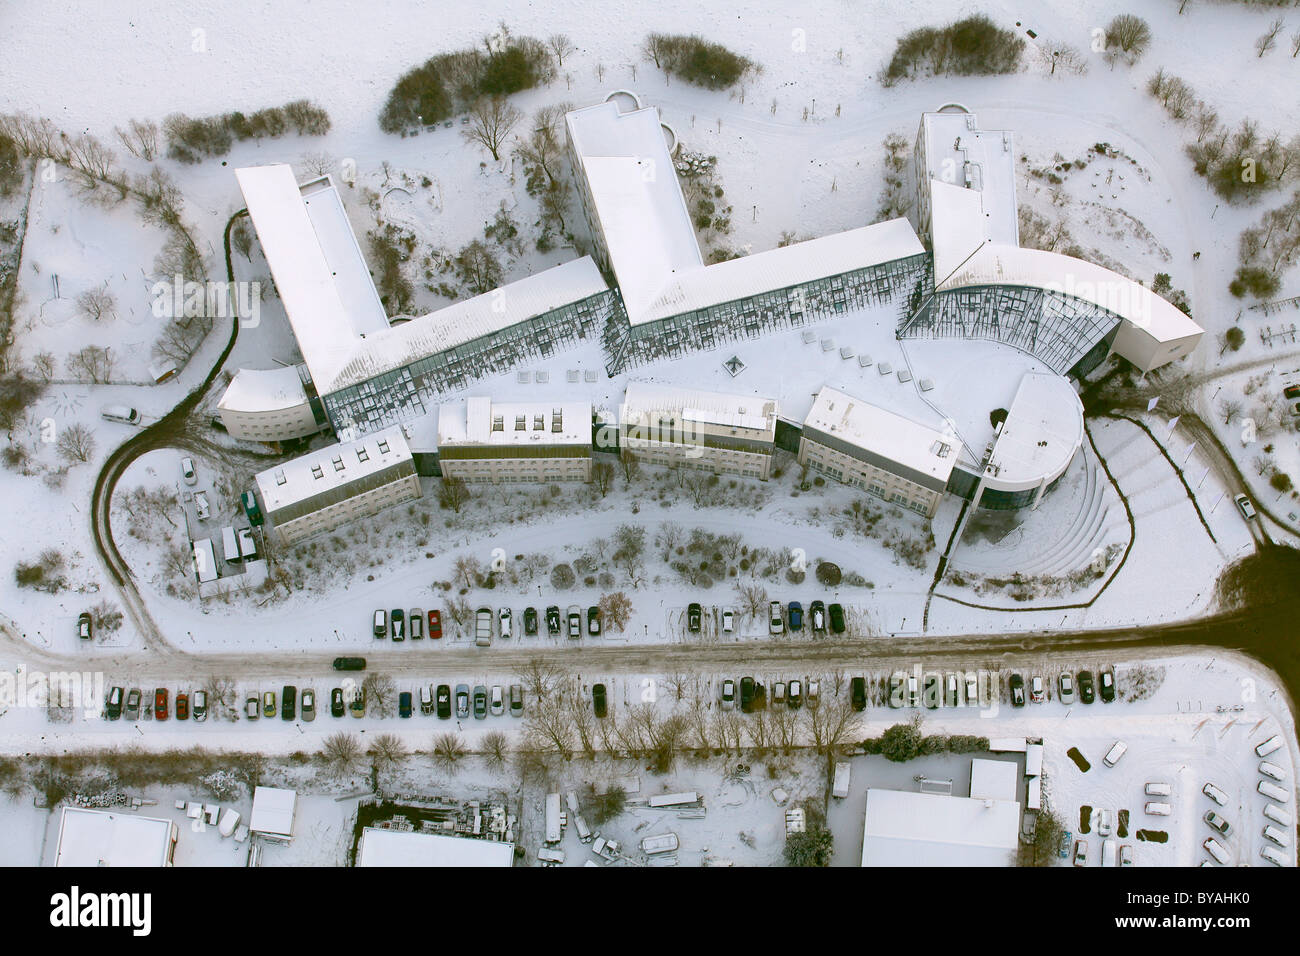 Luftbild anzeigen, Universität Witten-Herdecke, eine private Universität, Schnee, Witten, Ruhr und Umgebung, Nordrhein-Westfalen, Deutschland, Europa Stockfoto